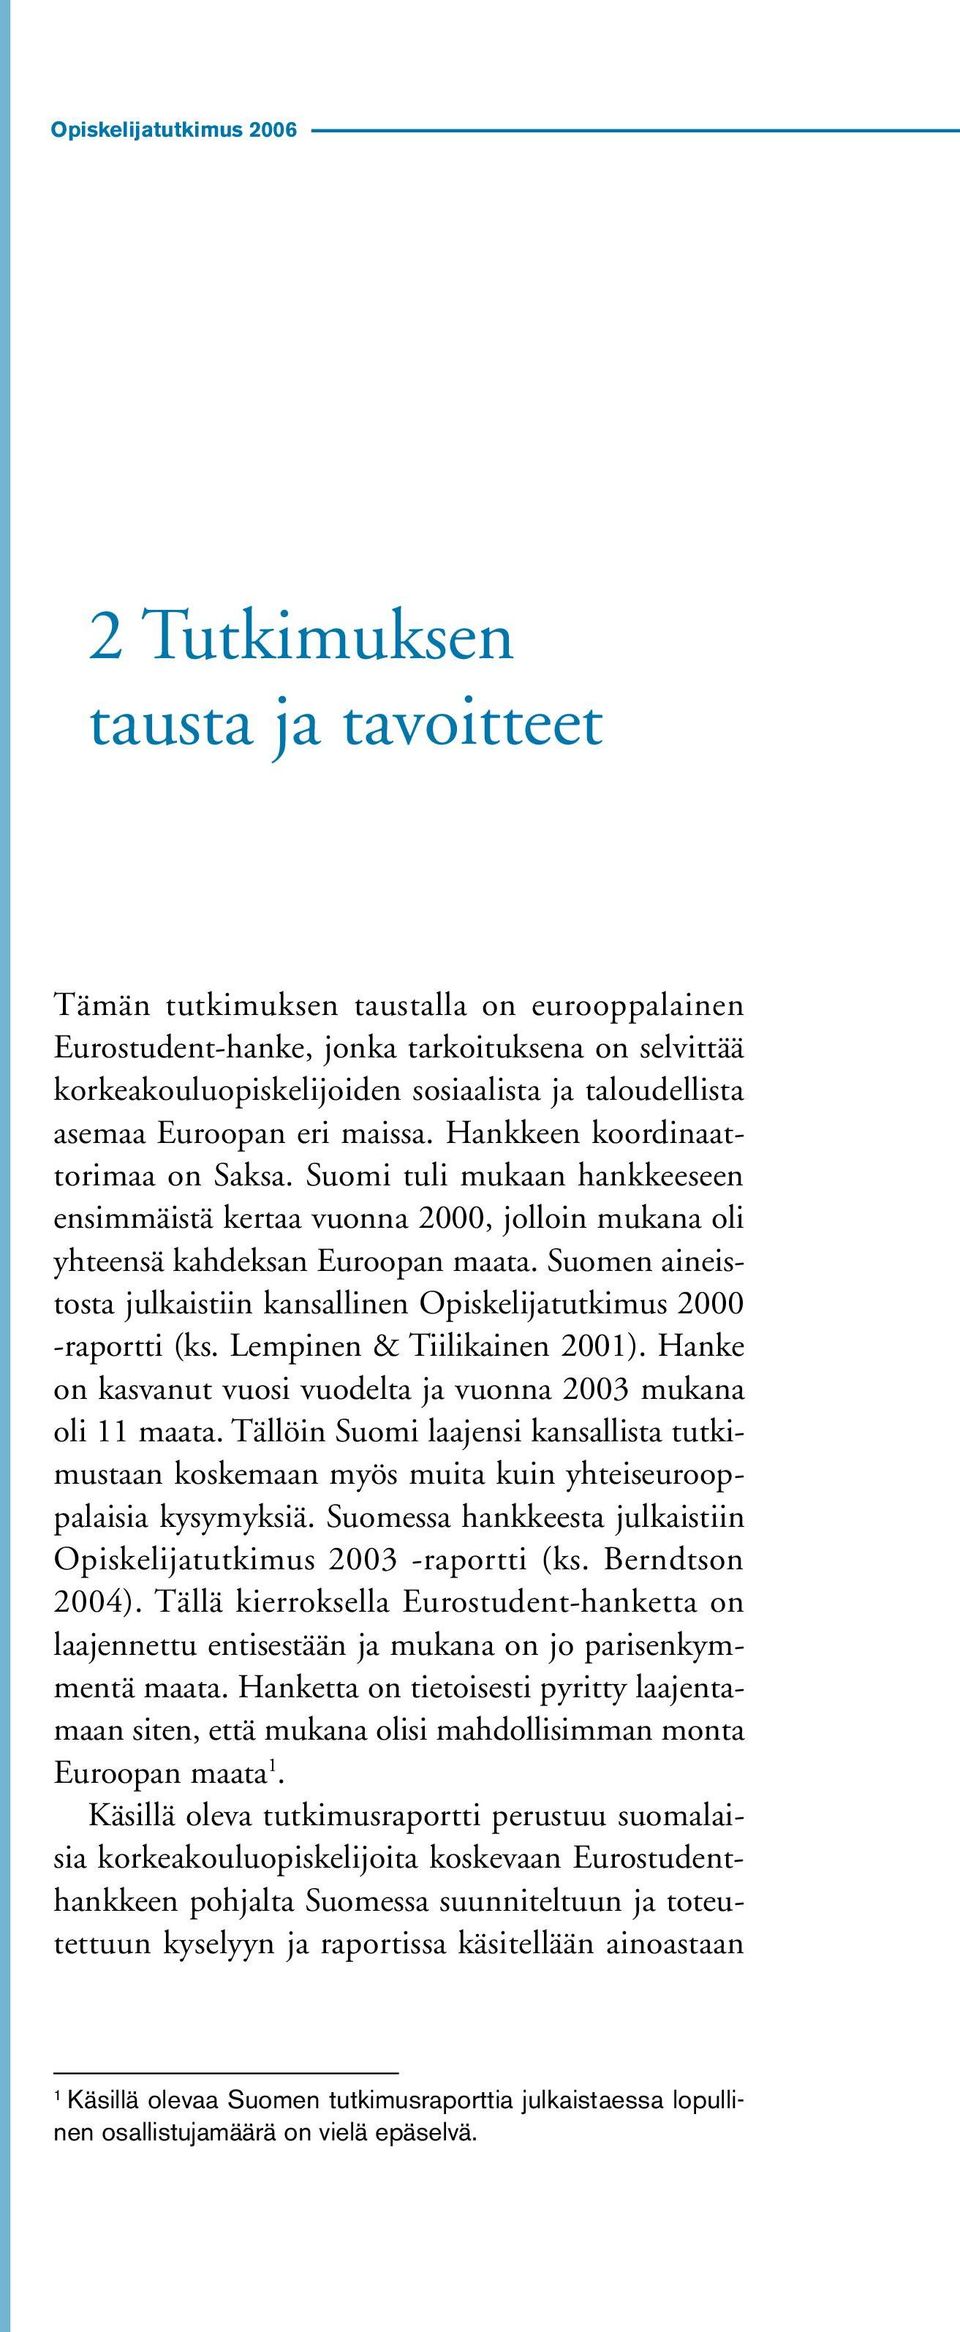 Suomen aineistosta julkaistiin kansallinen Opiskelijatutkimus 2000 raportti (ks. Lempinen & Tiilikainen 2001). Hanke on kasvanut vuosi vuodelta ja vuonna 2003 mukana oli 11 maata.